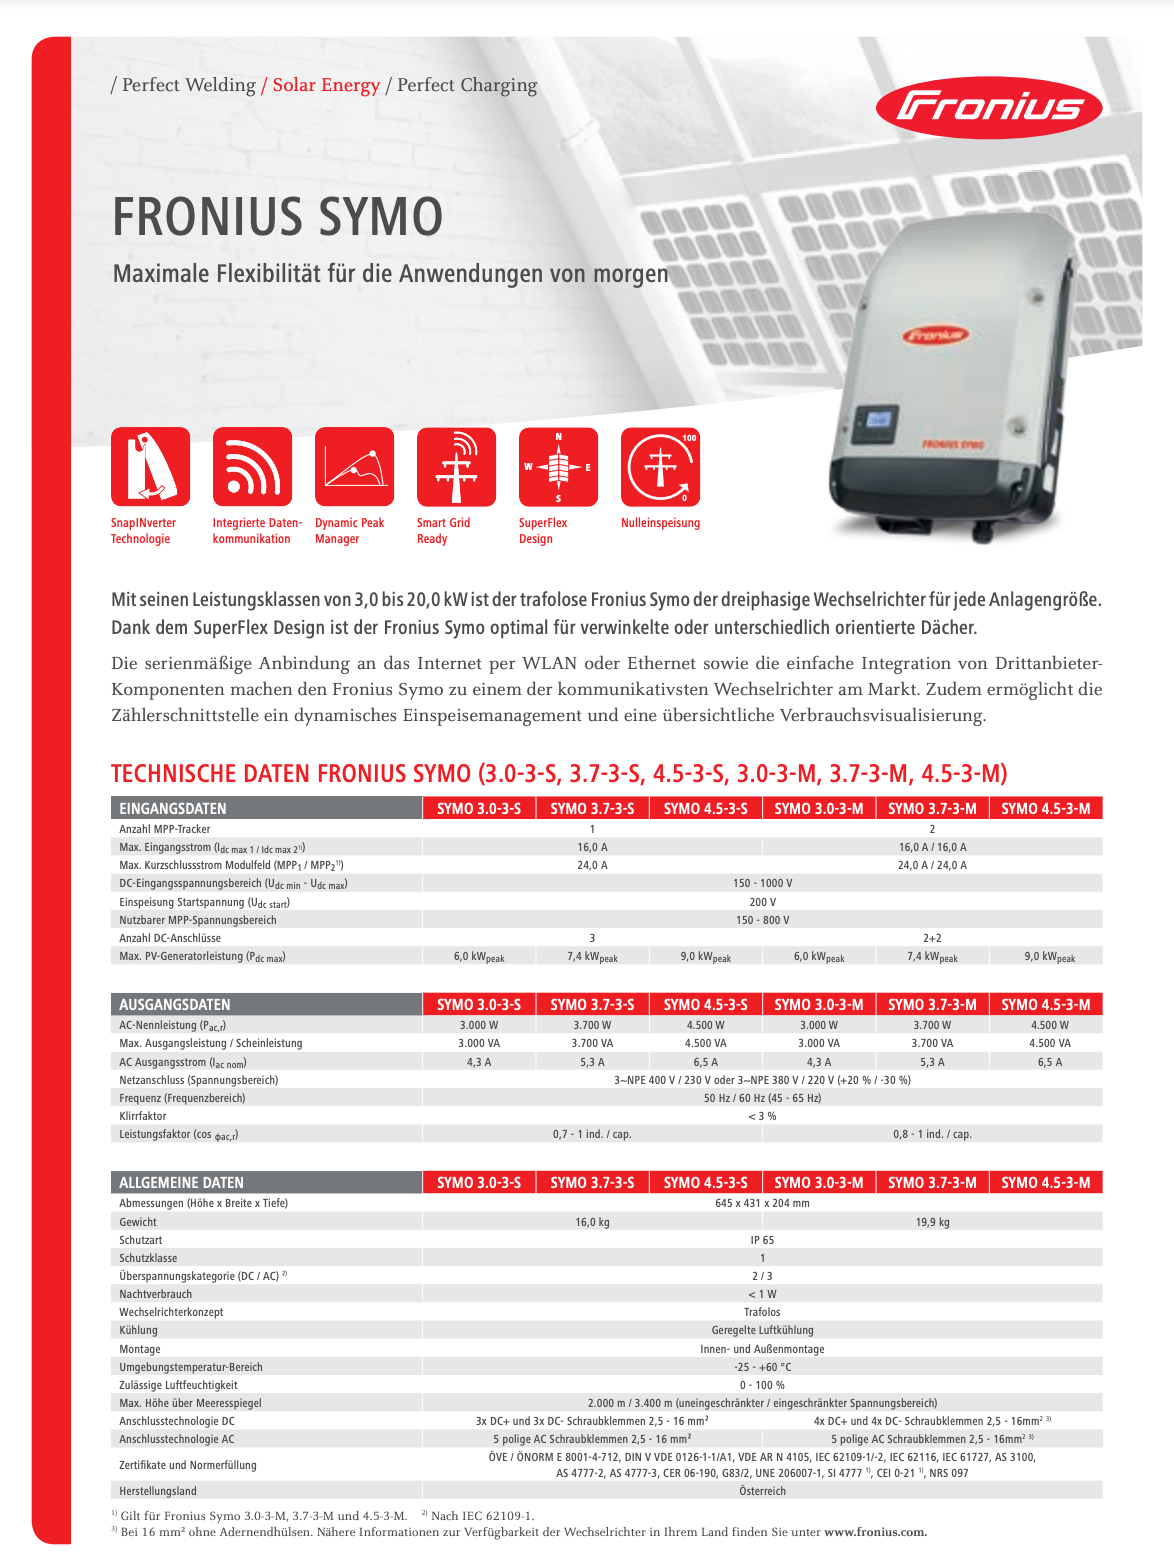 Fronius Symo 3-M 3-phasige Wechselrichter mit Variantenauswahl –